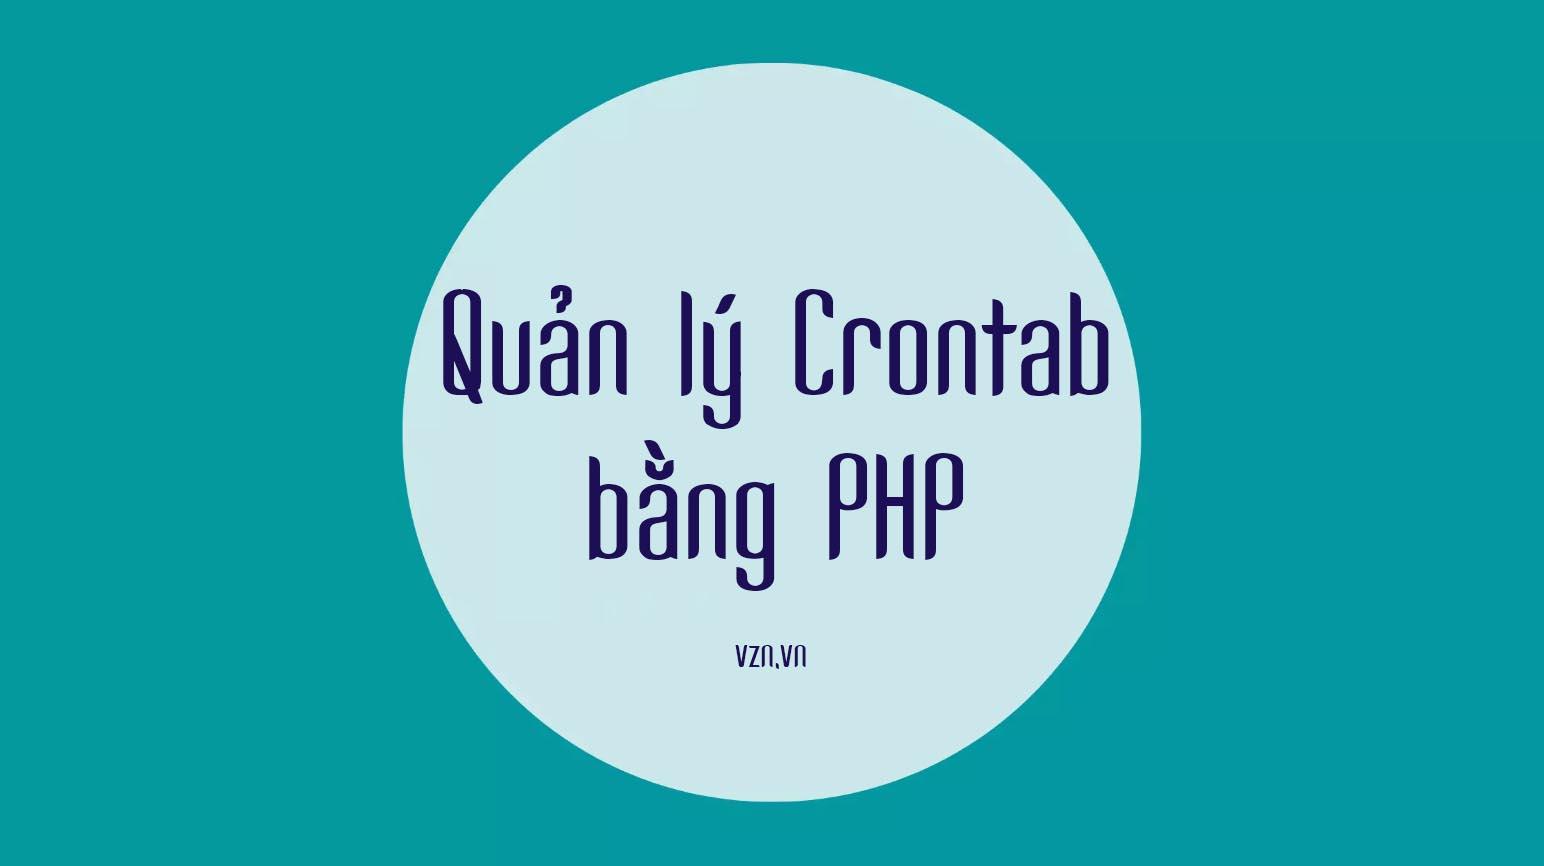 Quản lý Crontab (Cron Job) bằng PHP